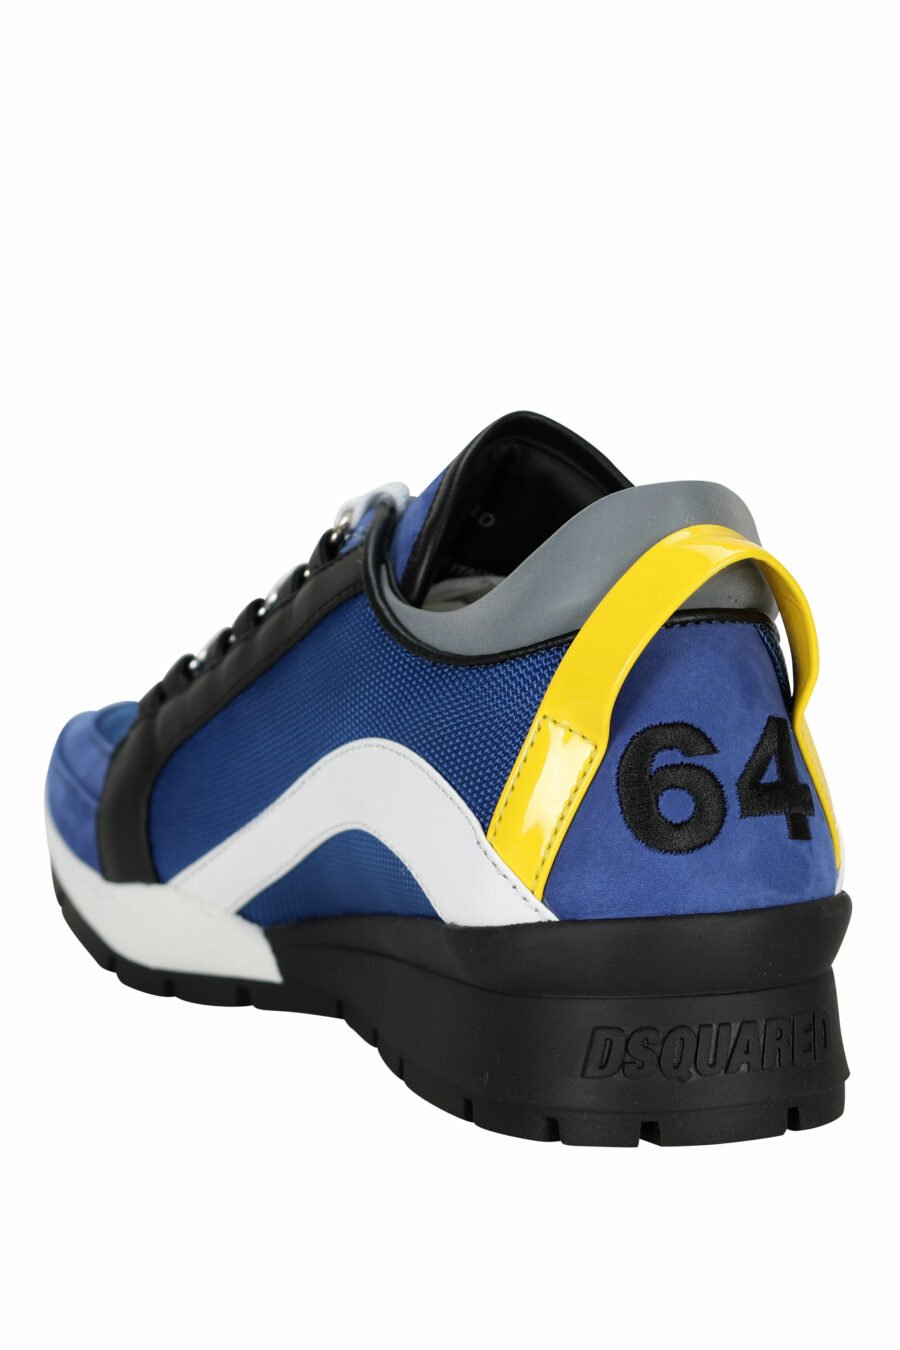 Baskets "legendary" bleues avec détails jaunes - 8055777300343 3